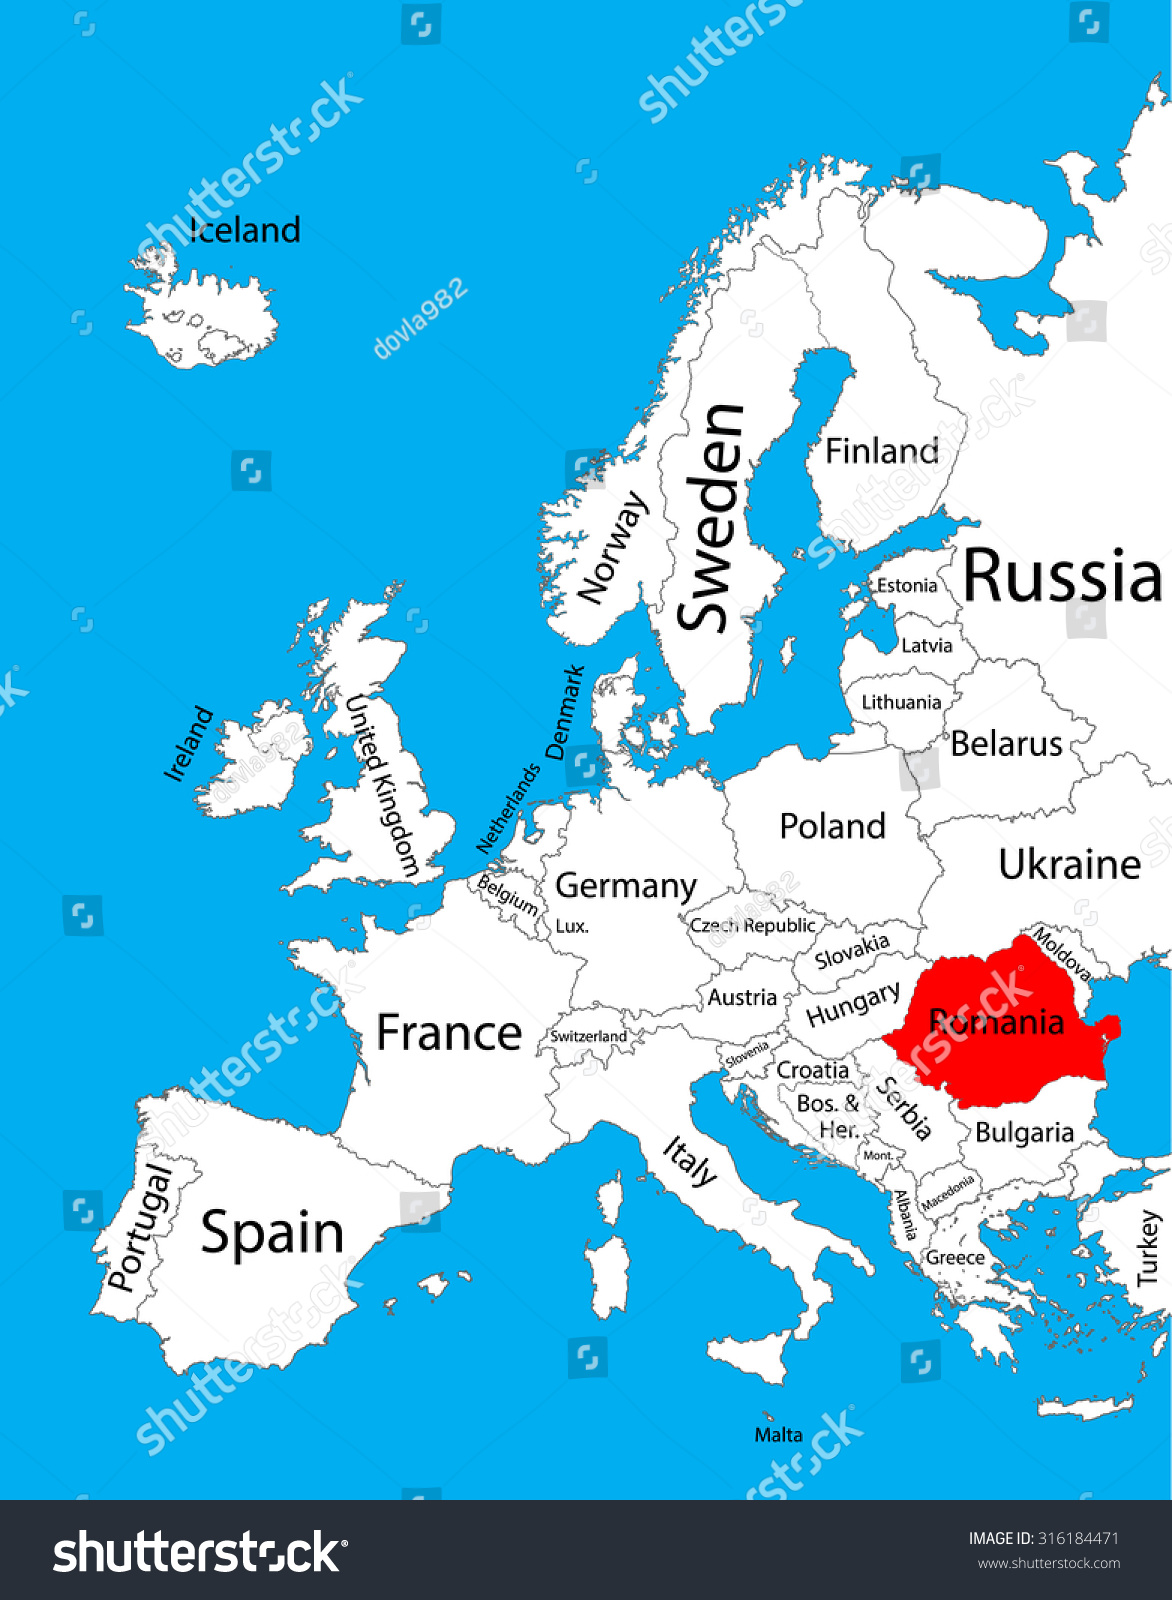 Romania Vector Map Europe Vector Map Stock Vector Royalty Free 316184471